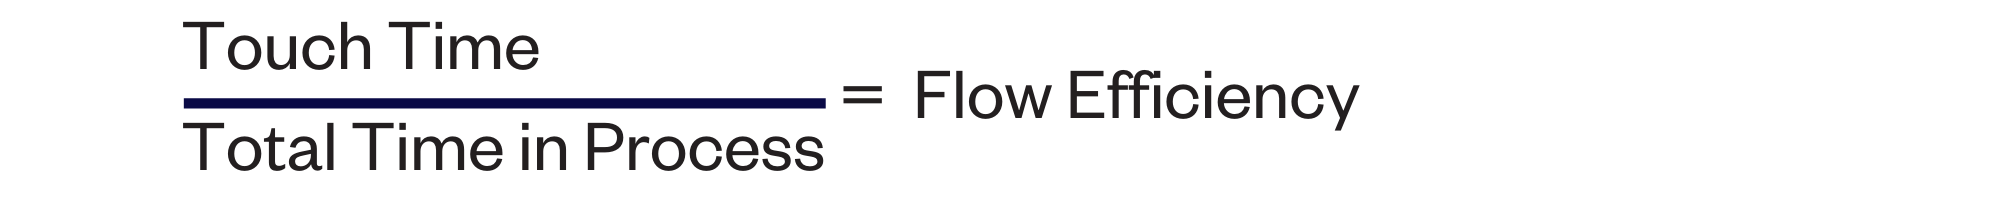 Flow efficiency